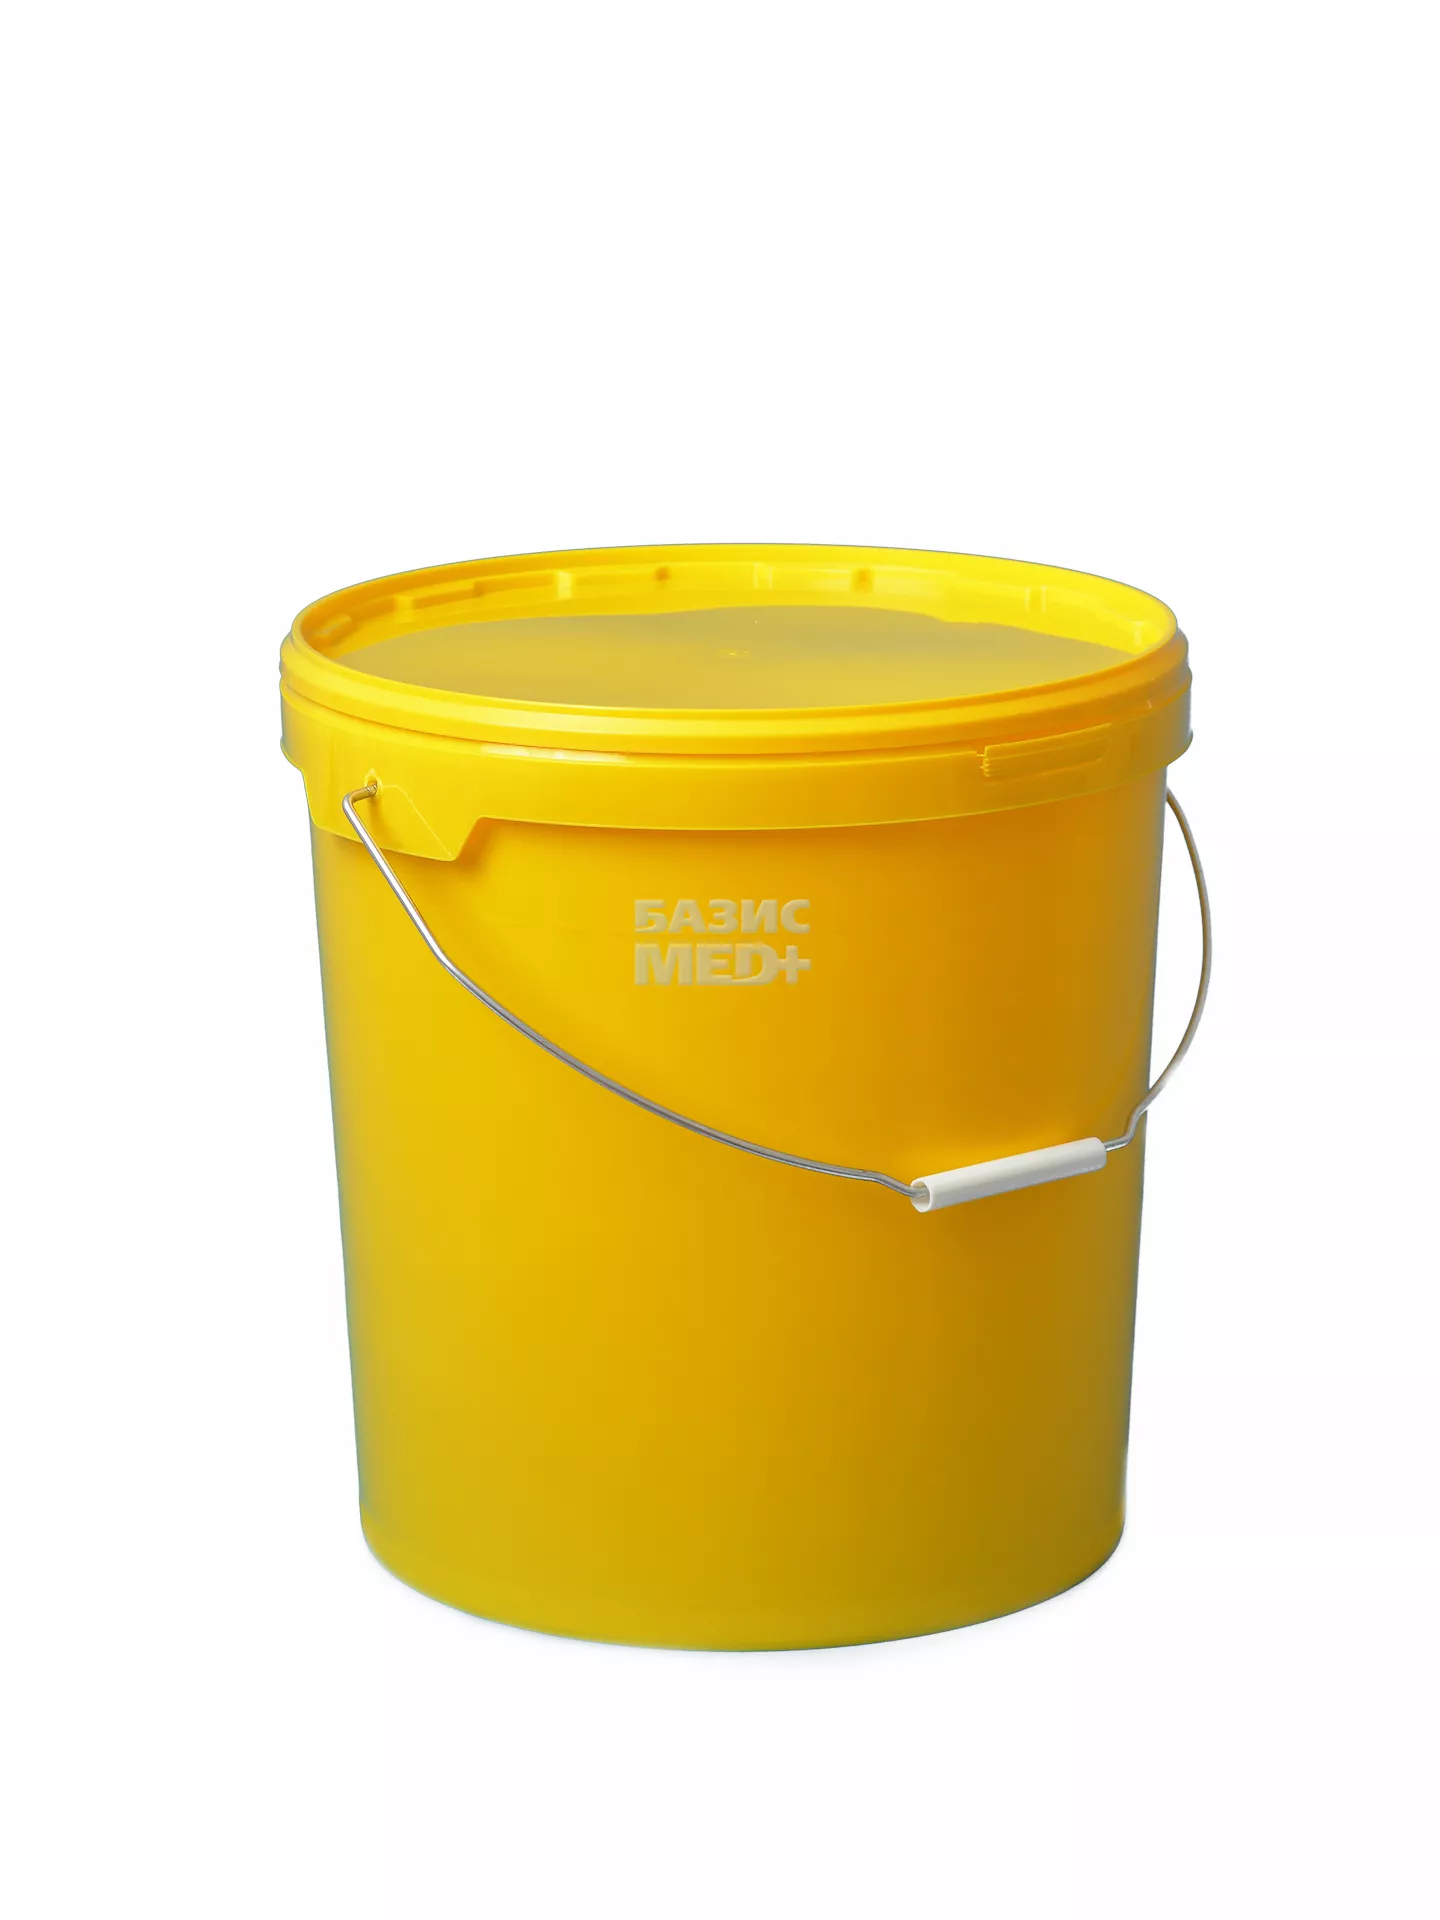 Бак 20,0л для сбора, хранения медицинских отходов (класс Б) с крышкой, цвет желтый, многоразовый